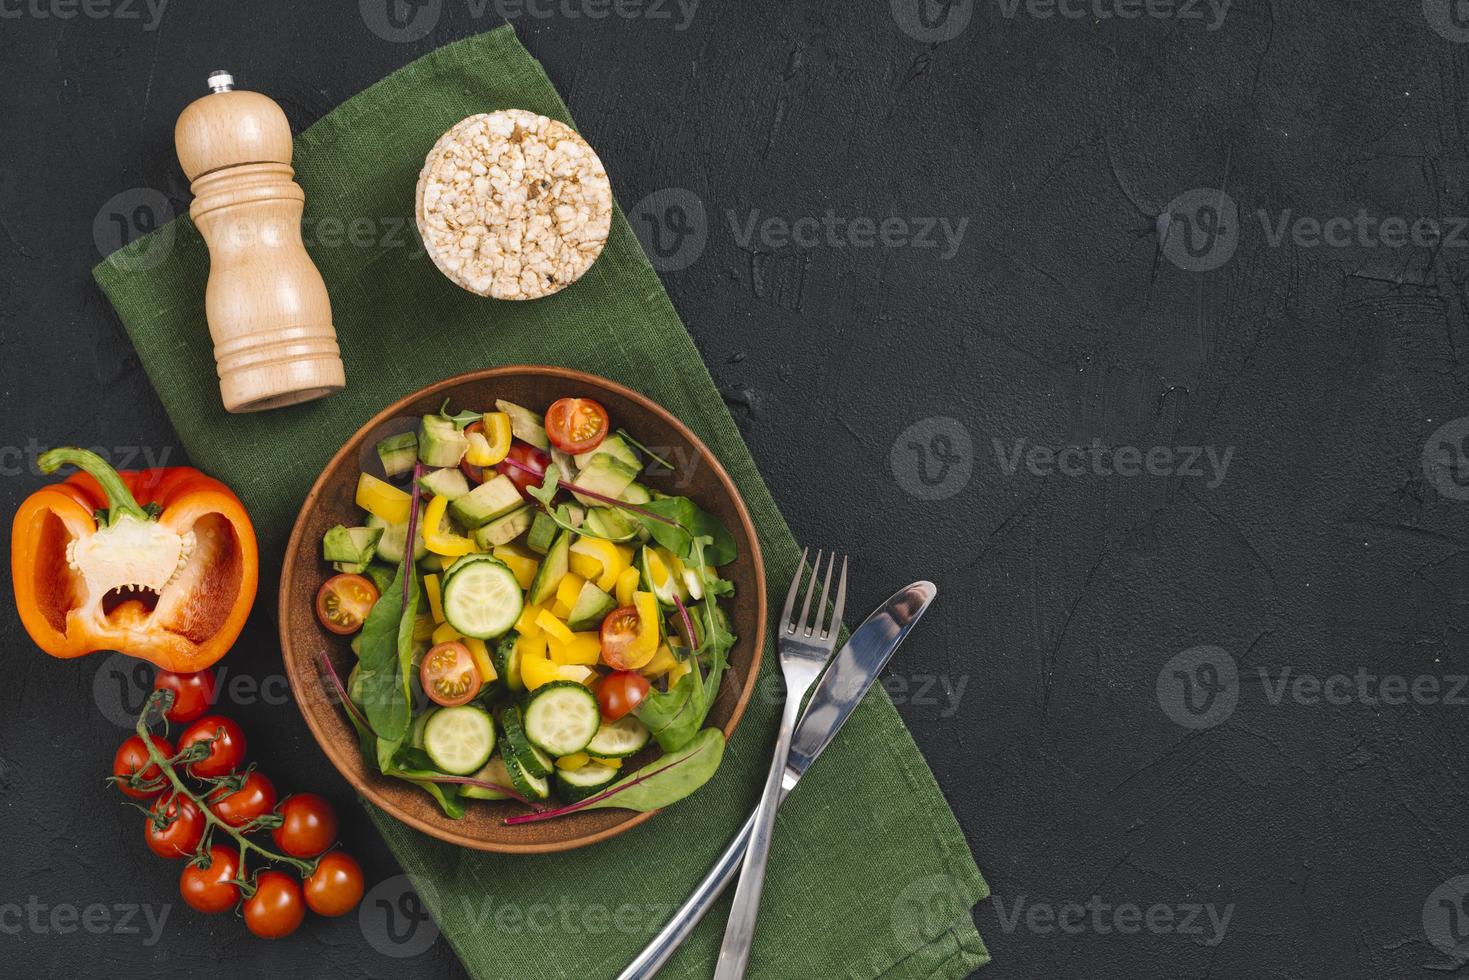 Reis Puffkuchen Gemüse Salat Pfefferstreuer Serviette schwarzer Beton strukturierter Hintergrund foto